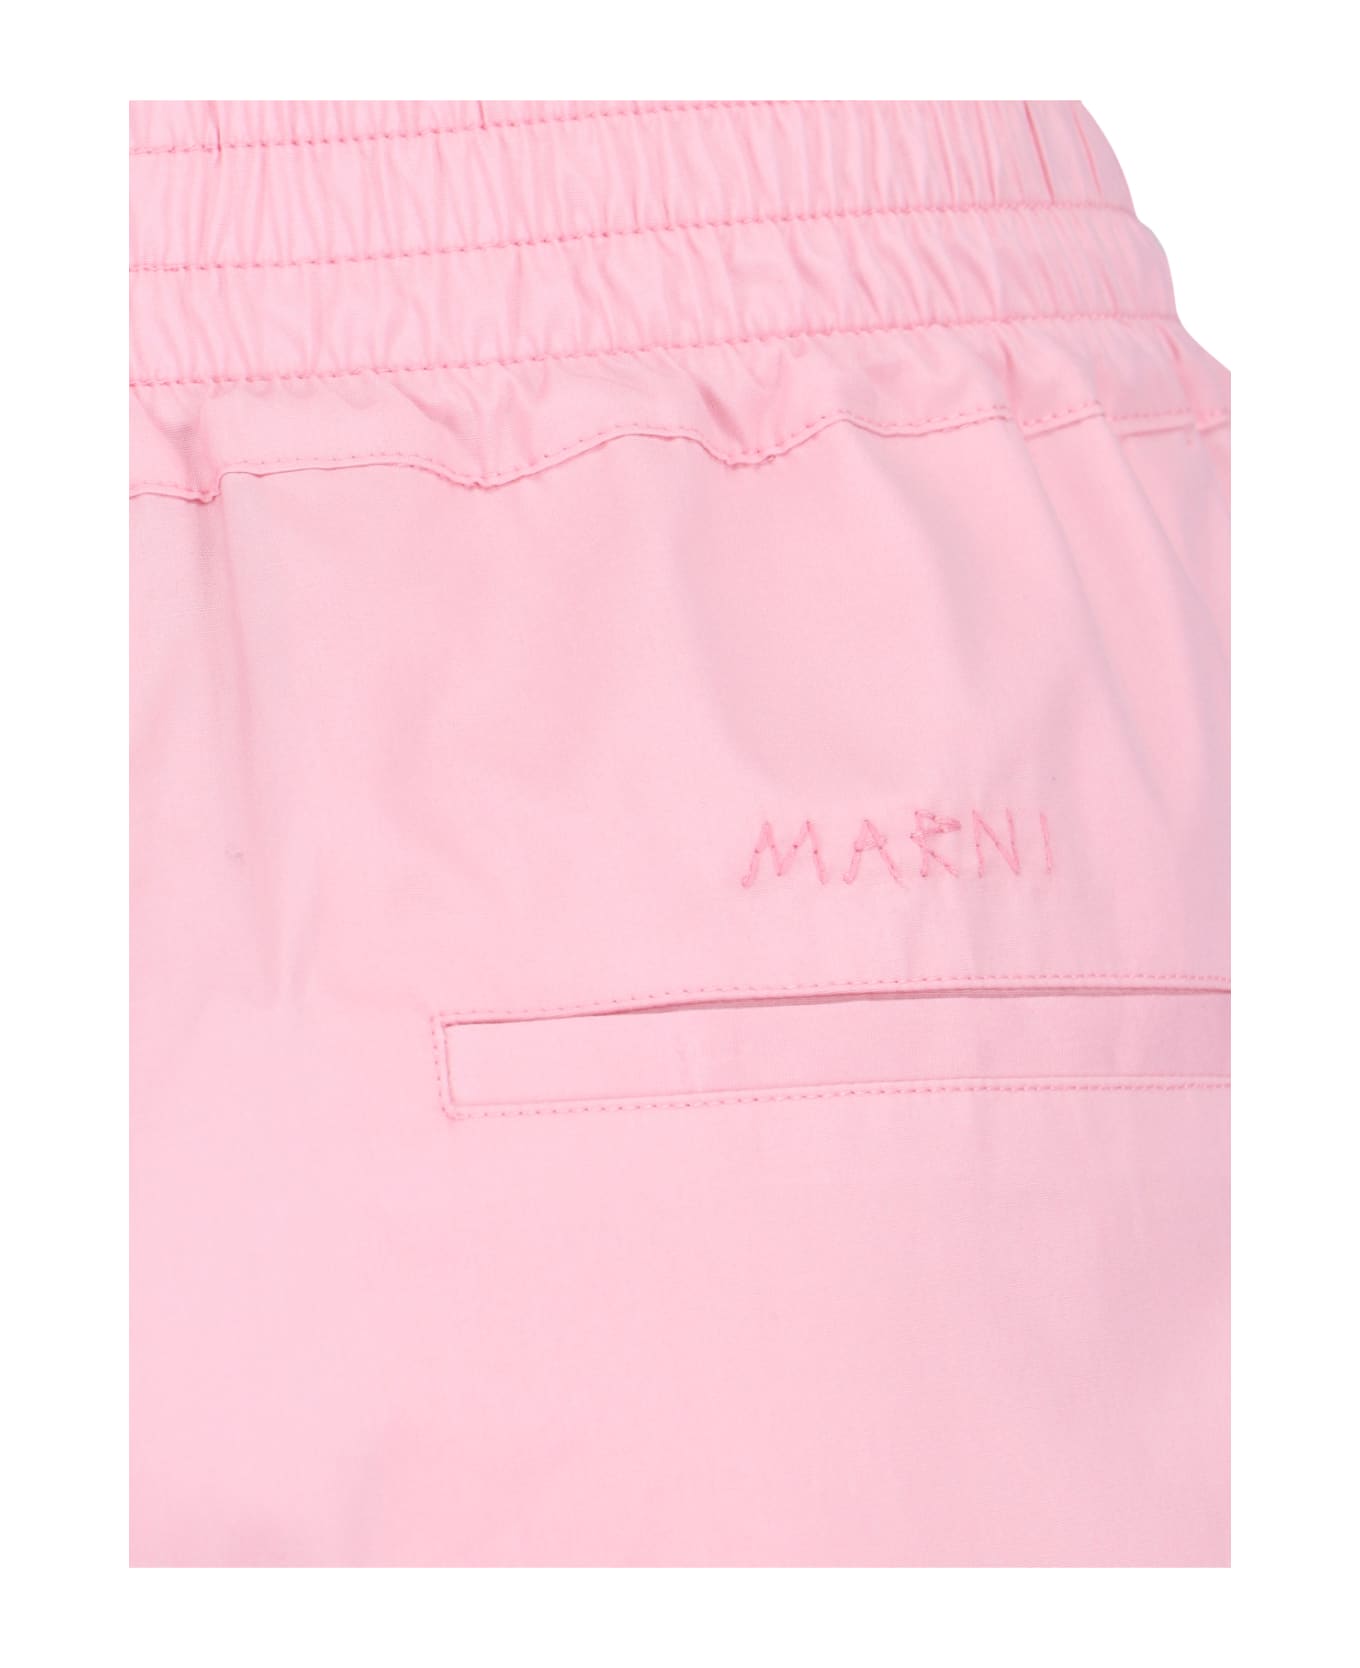 Marni Track Shorts - Pink ボトムス